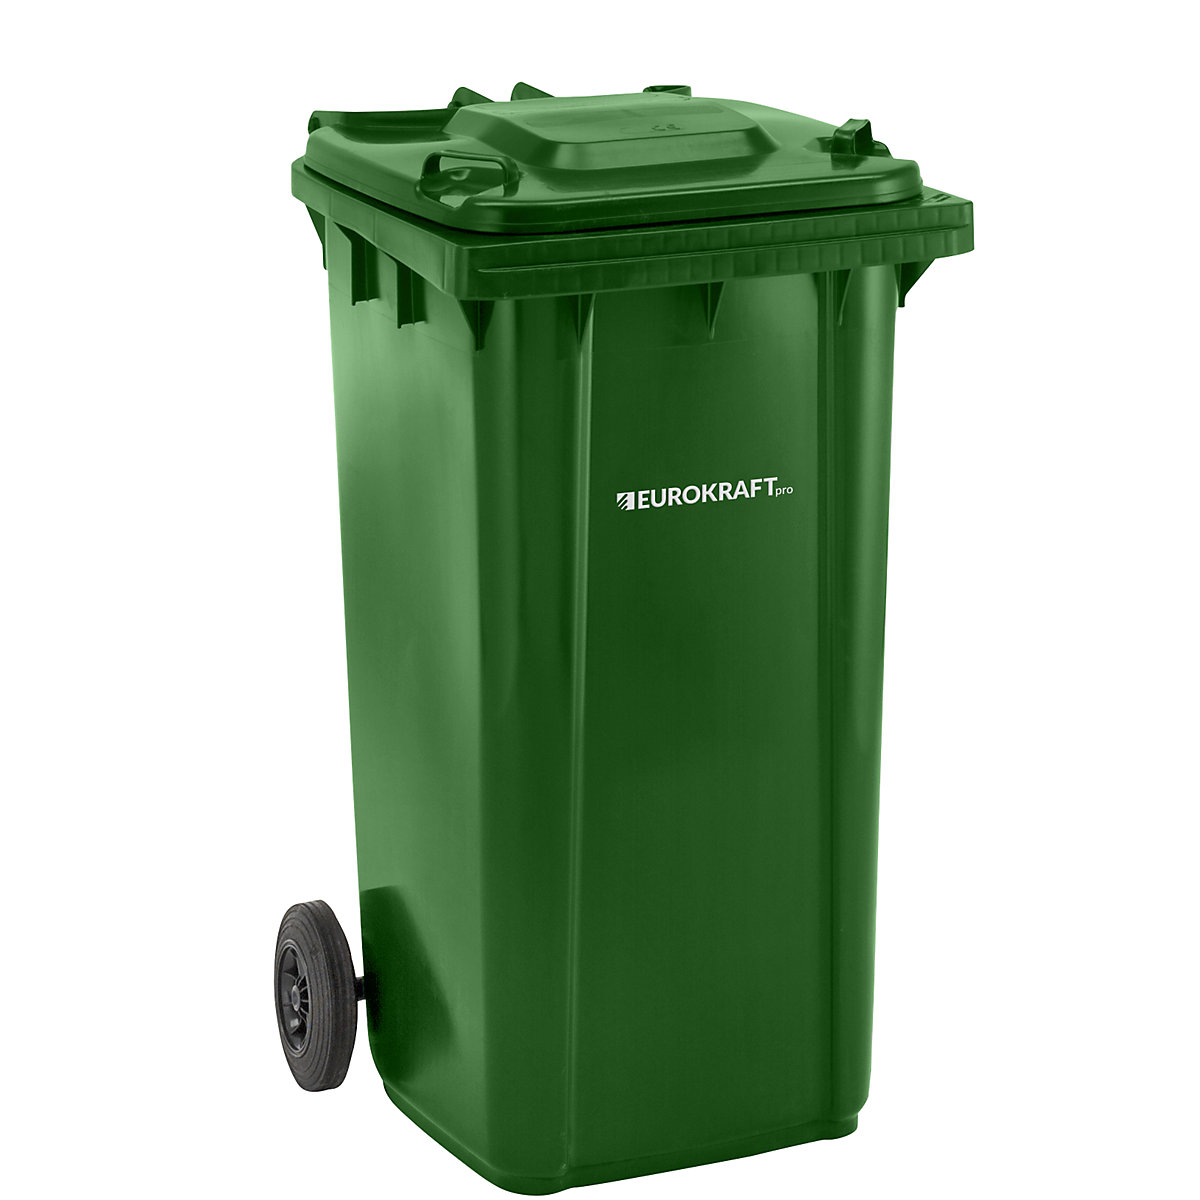 Contentor de lixo em plástico DIN EN 840 – eurokraft pro, volume 240 l, LxAxP 580 x 1100 x 740 mm, verde, a partir de 5 unid.-7